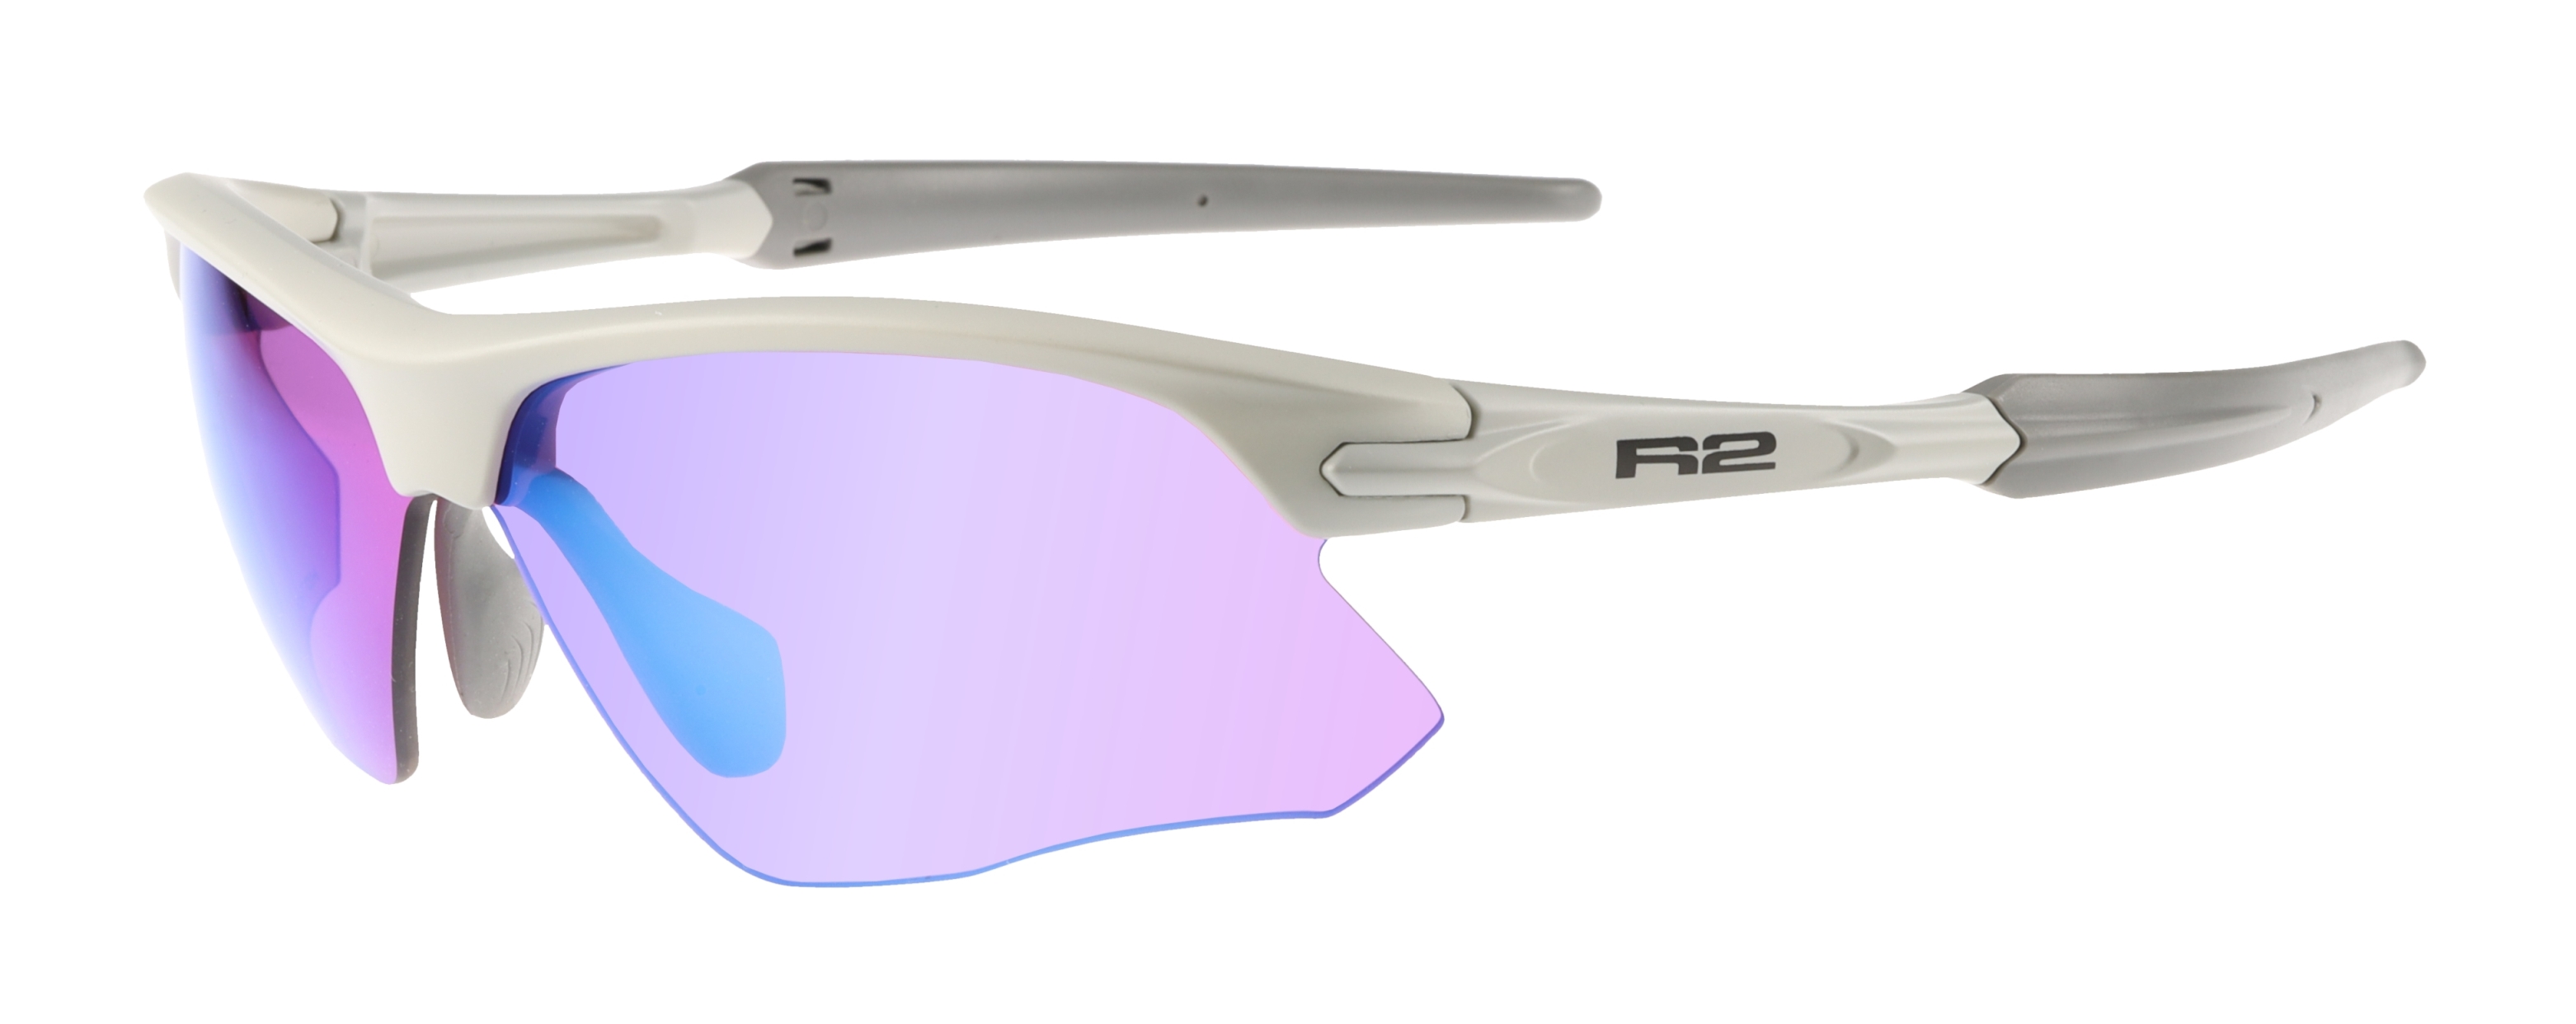 HD sportovní sluneční brýle R2 KICK AT109D